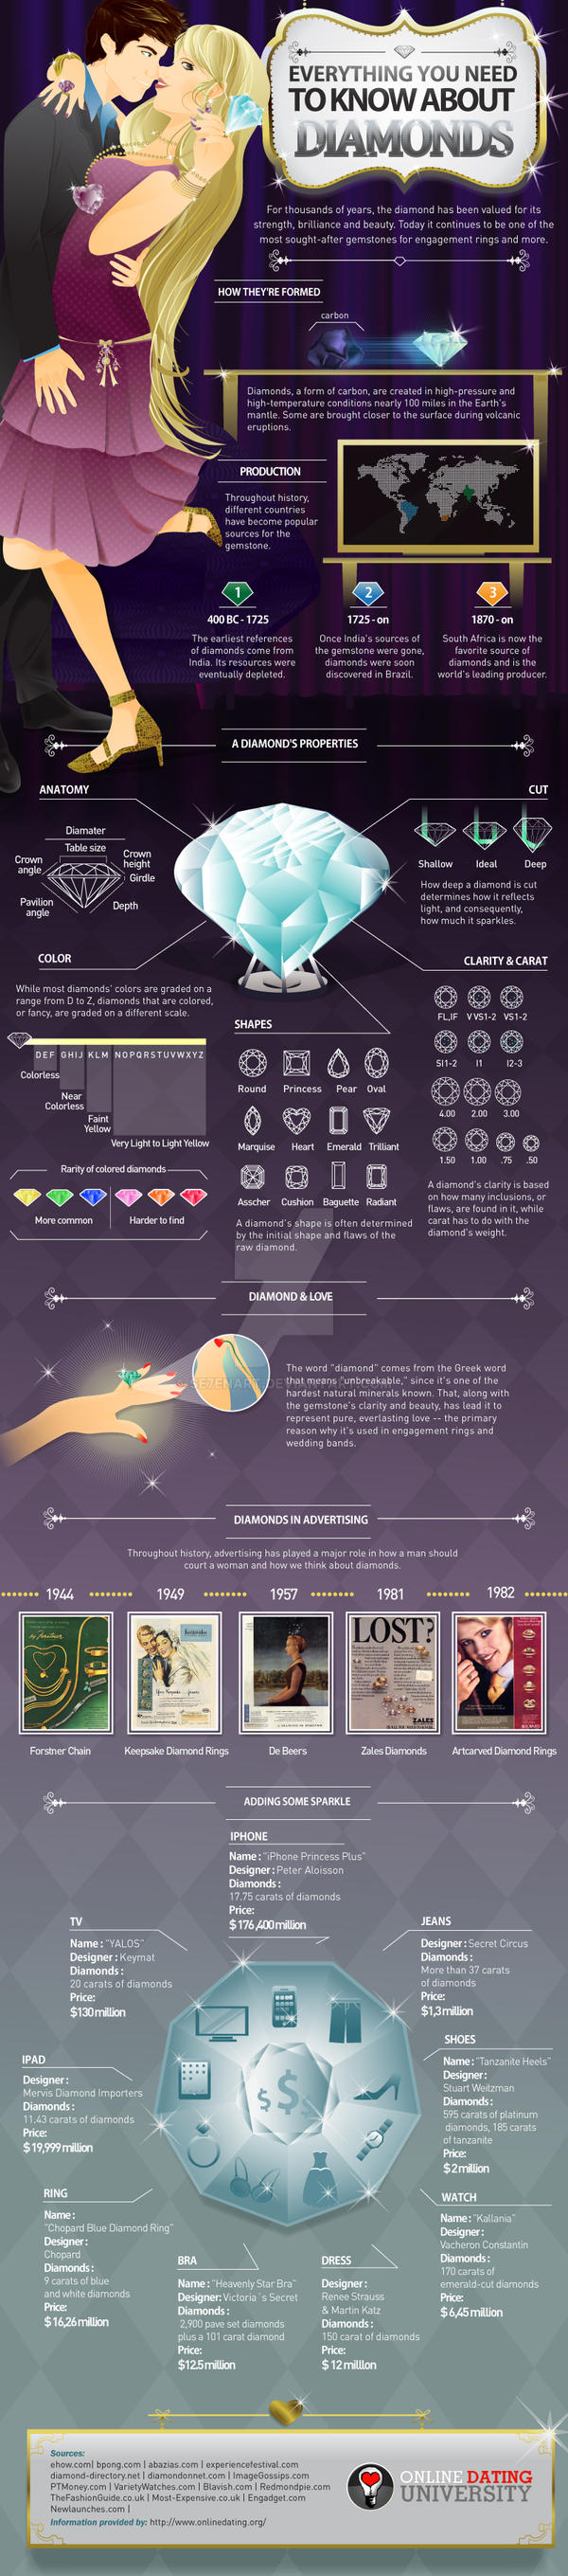 Diamond-Infographic